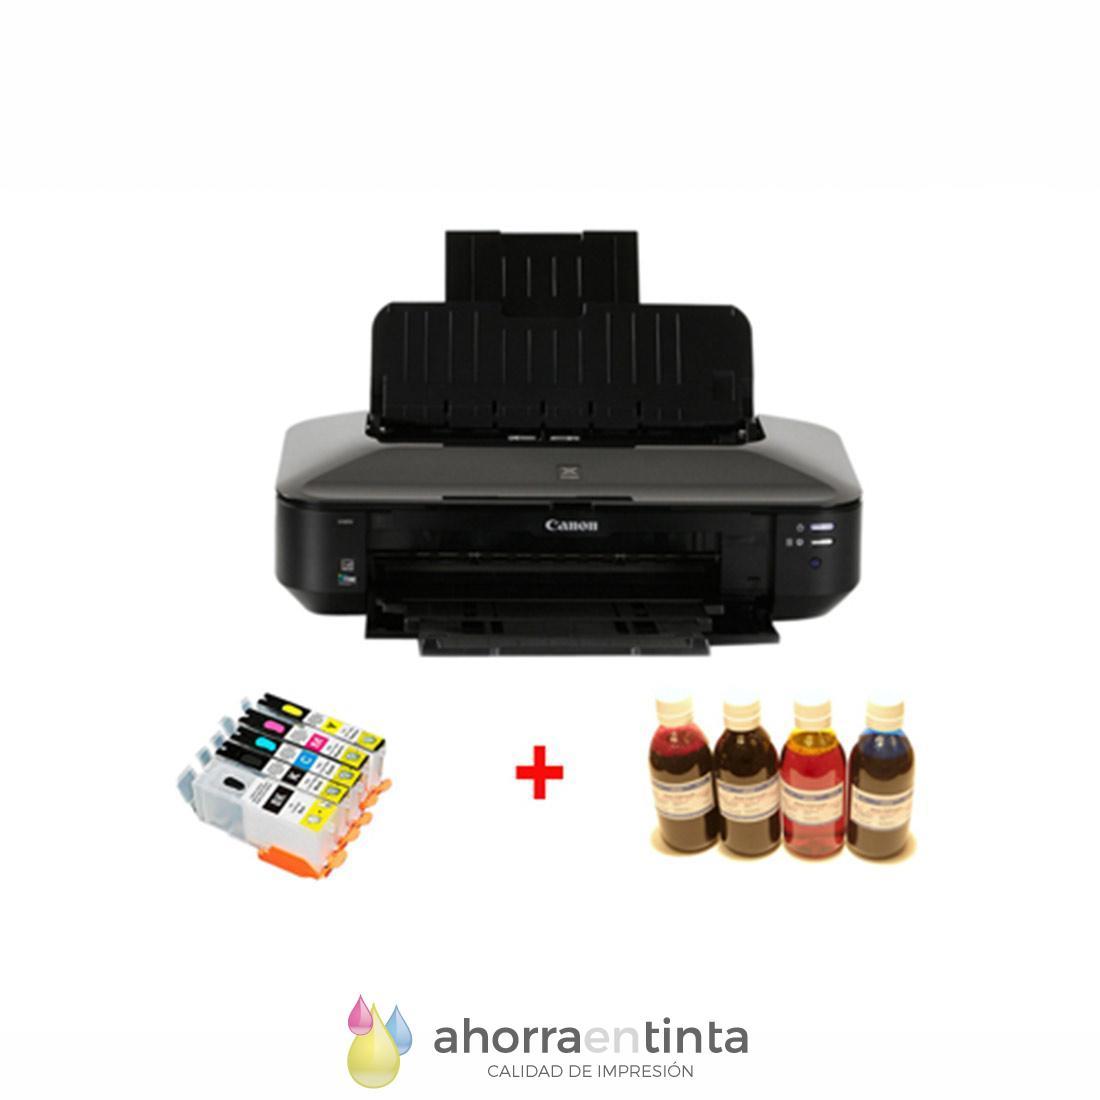 Impresoras con tanques: impresoras de tinta y tóner recargables y